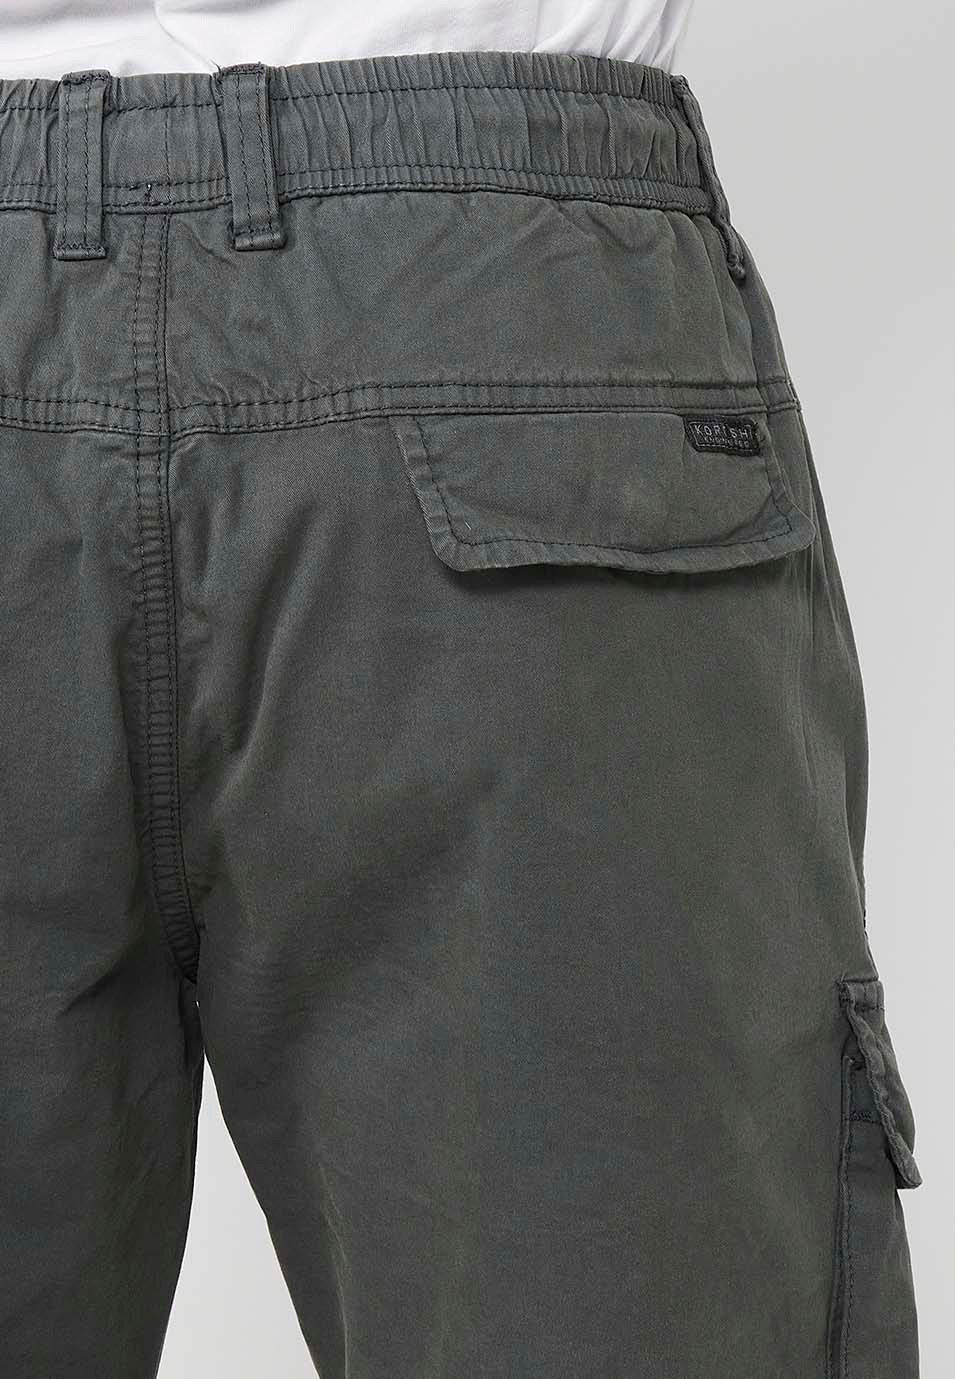 Pantalons curts càrrec amb Butxaques laterals amb solapa i Tancament davanter amb cremallera i botó Color Gris per a Home 8